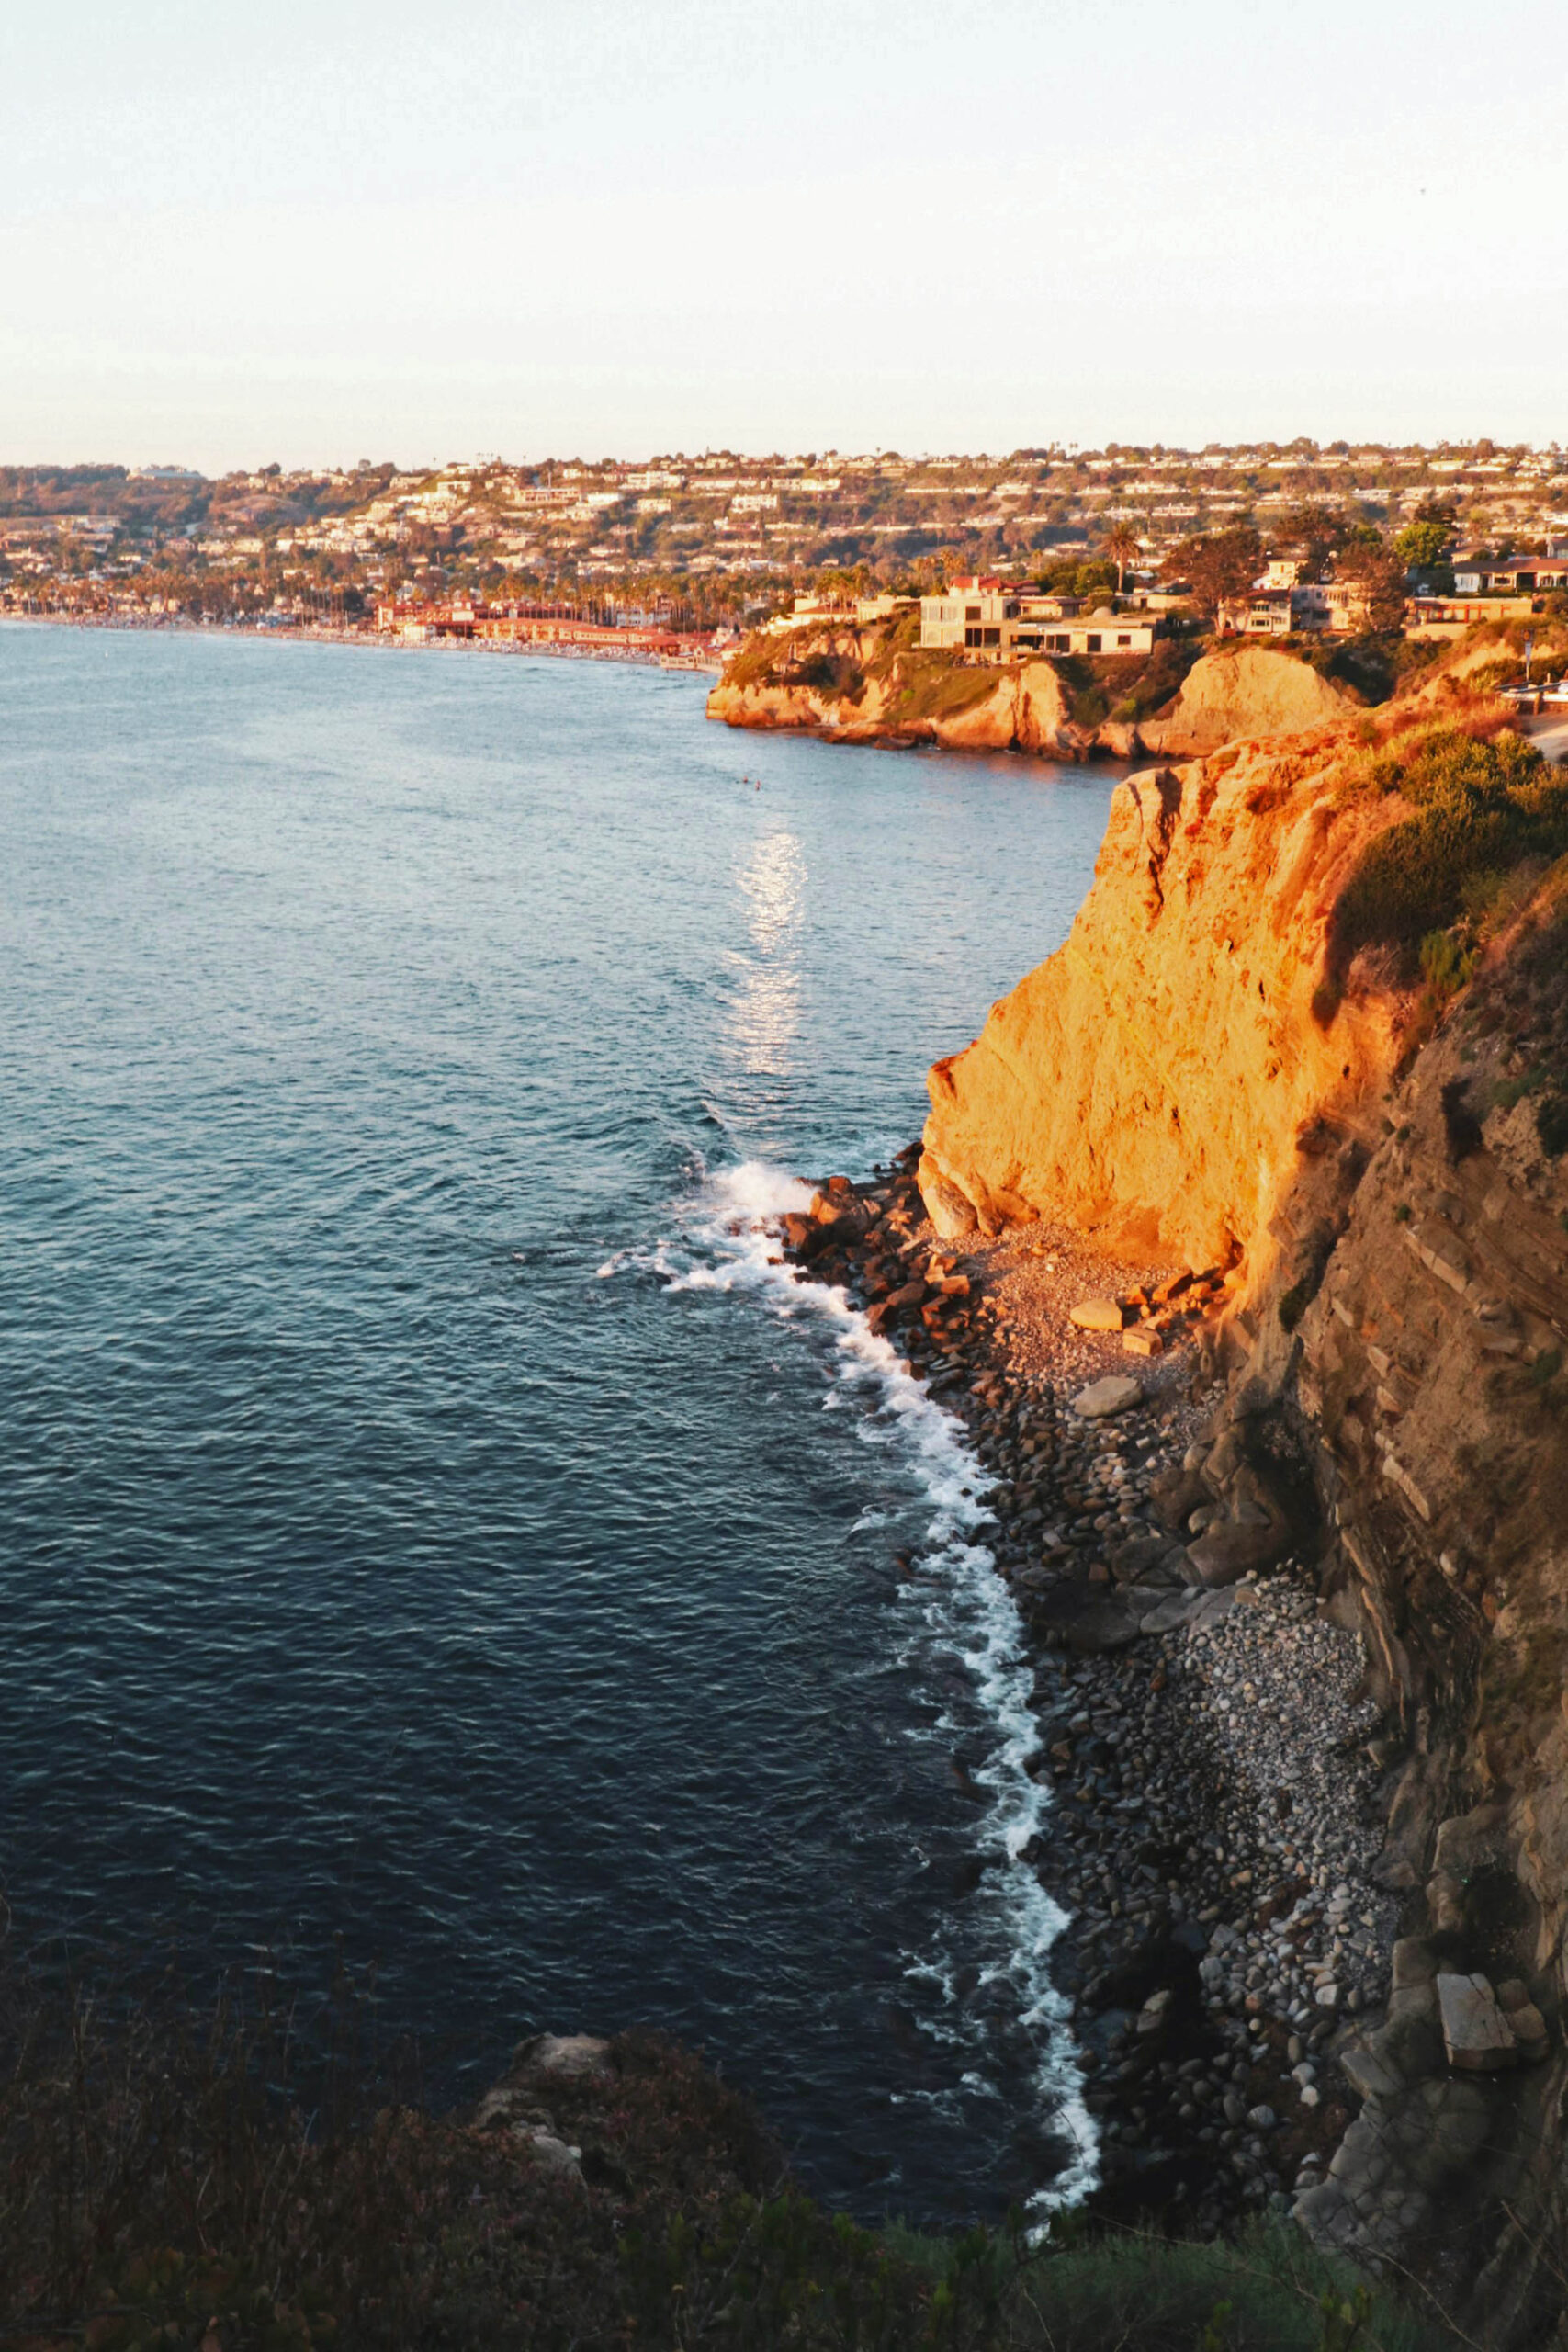 Ocean cliffs in La Jolla seaside area - San Diego, California